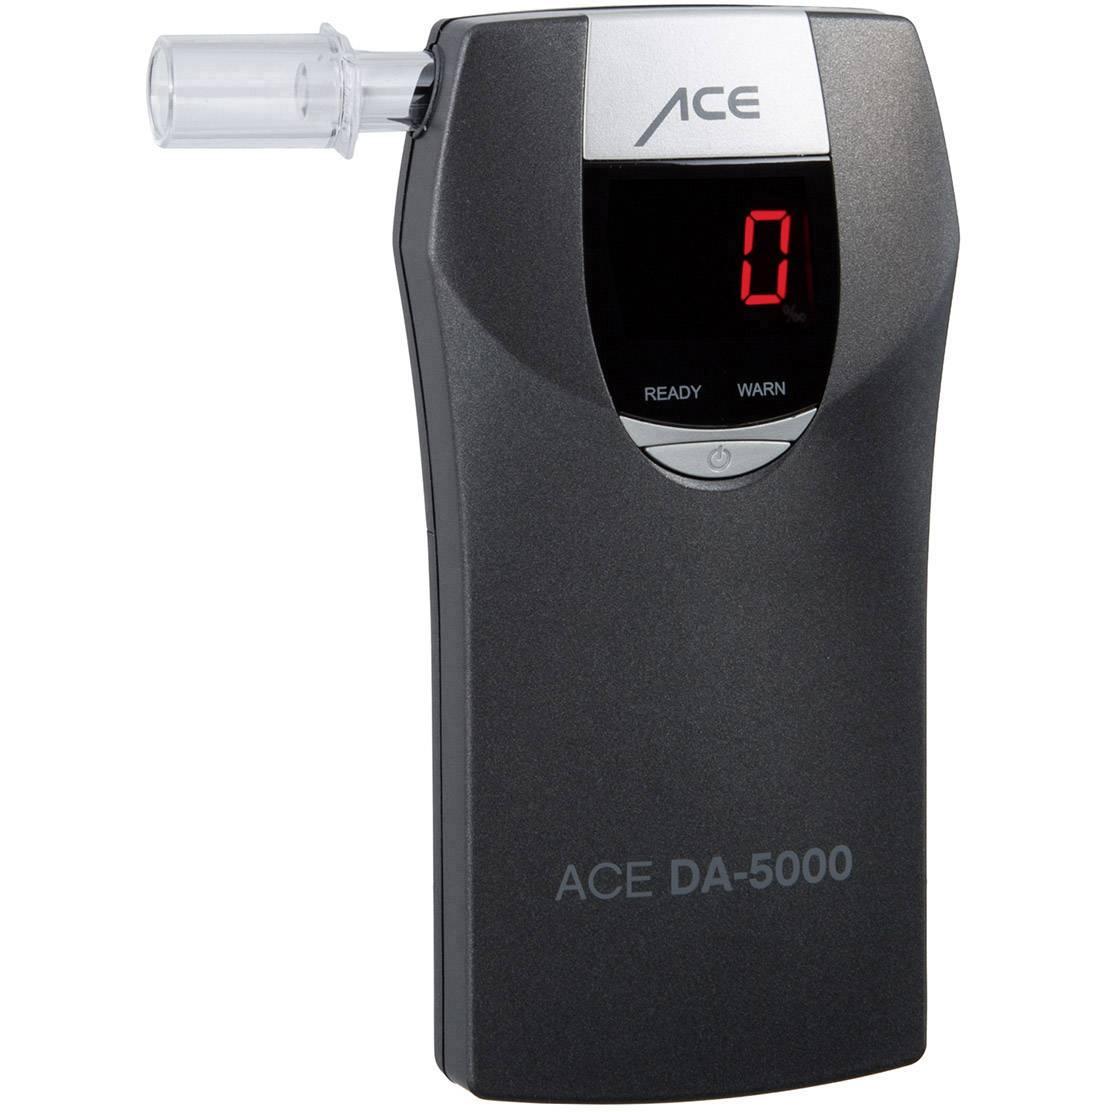 Alkohol tester ACE DA-5000, funkce odpočítávání, alarm, různé jednotky, vč.  displeje, šedá : Půhy.cz